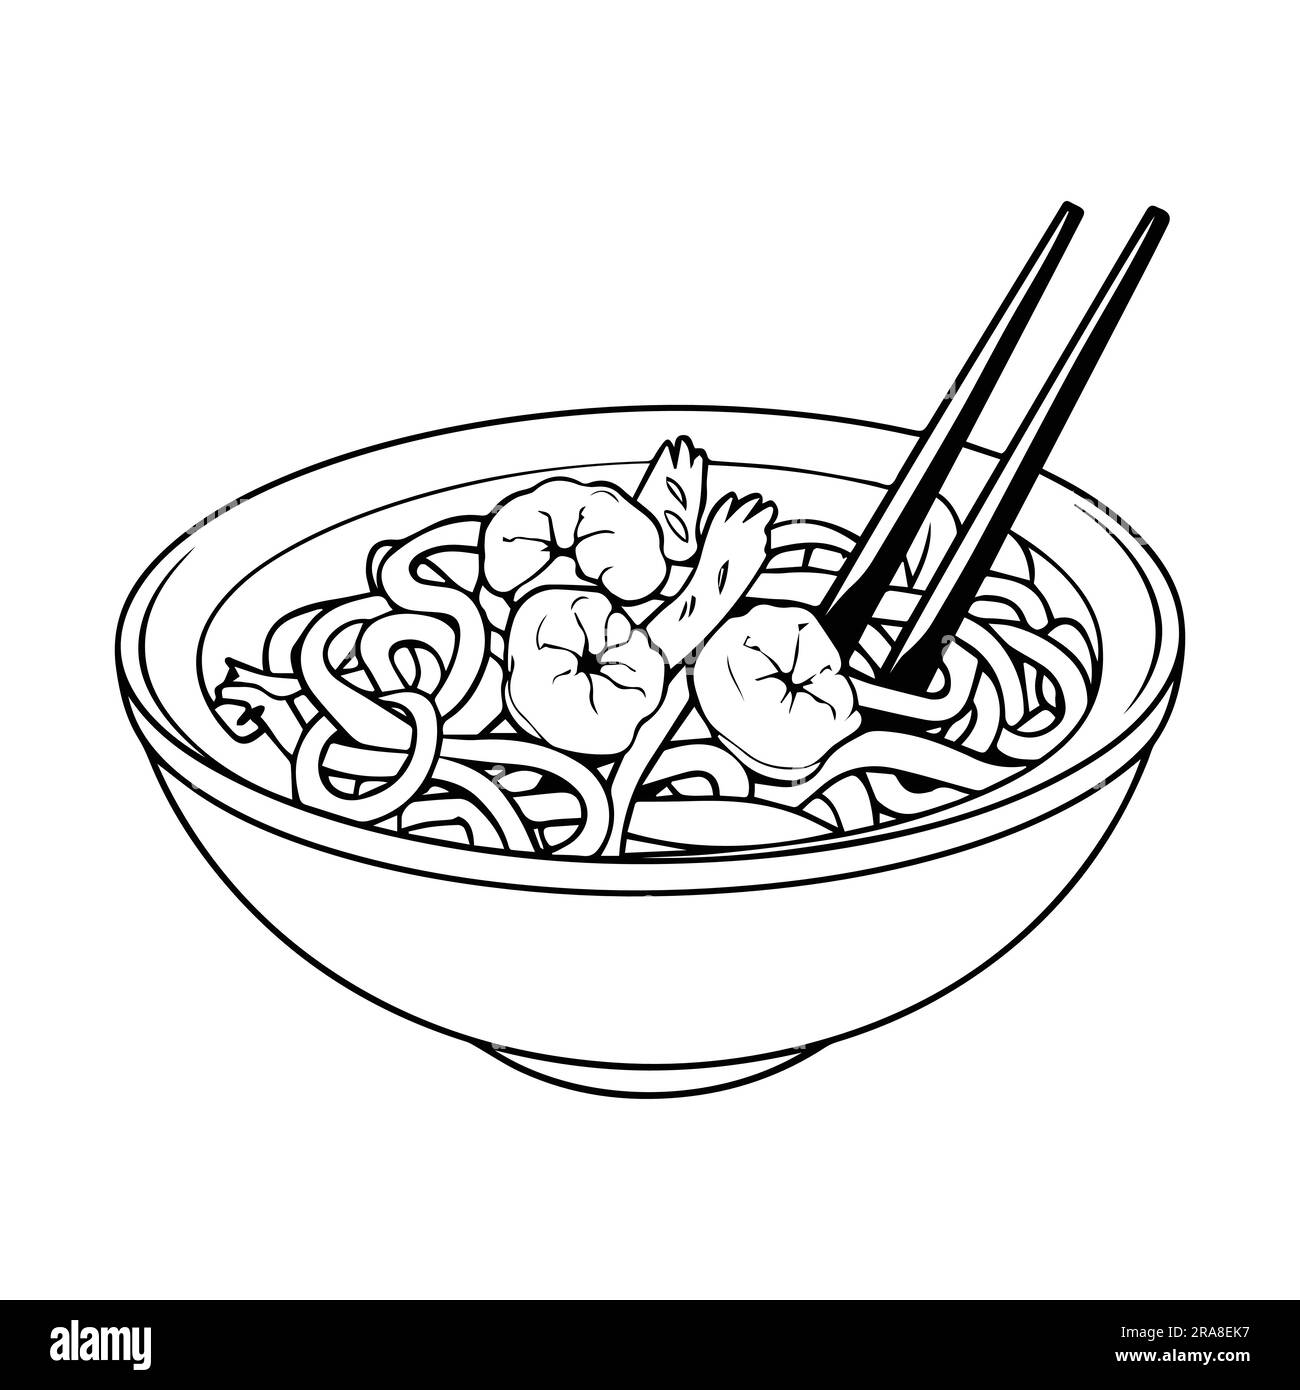 Deliziosi spaghetti disegnati a mano in stile doodle isolati sullo sfondo Illustrazione Vettoriale